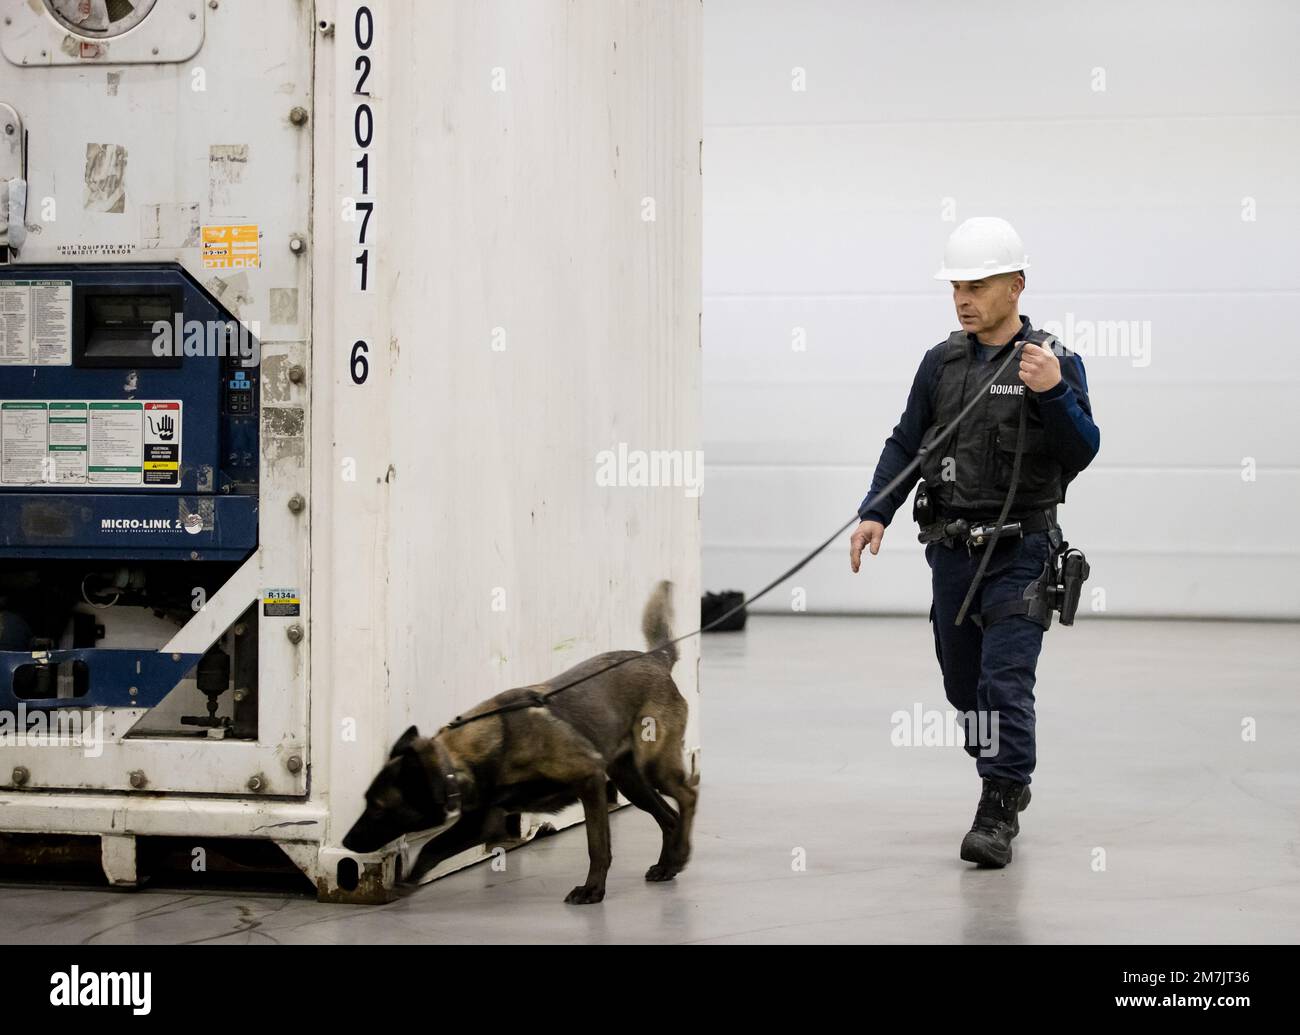 ROTTERDAM - Ein Spürhund während einer Präsentation des schwer bewaffneten Sonderhilfsteams der Zollbehörden. Das Team bekämpft Drogenkriminalität im Hafen von Rotterdam. ANP SEM VAN DER WAL niederlande raus - belgien raus Stockfoto